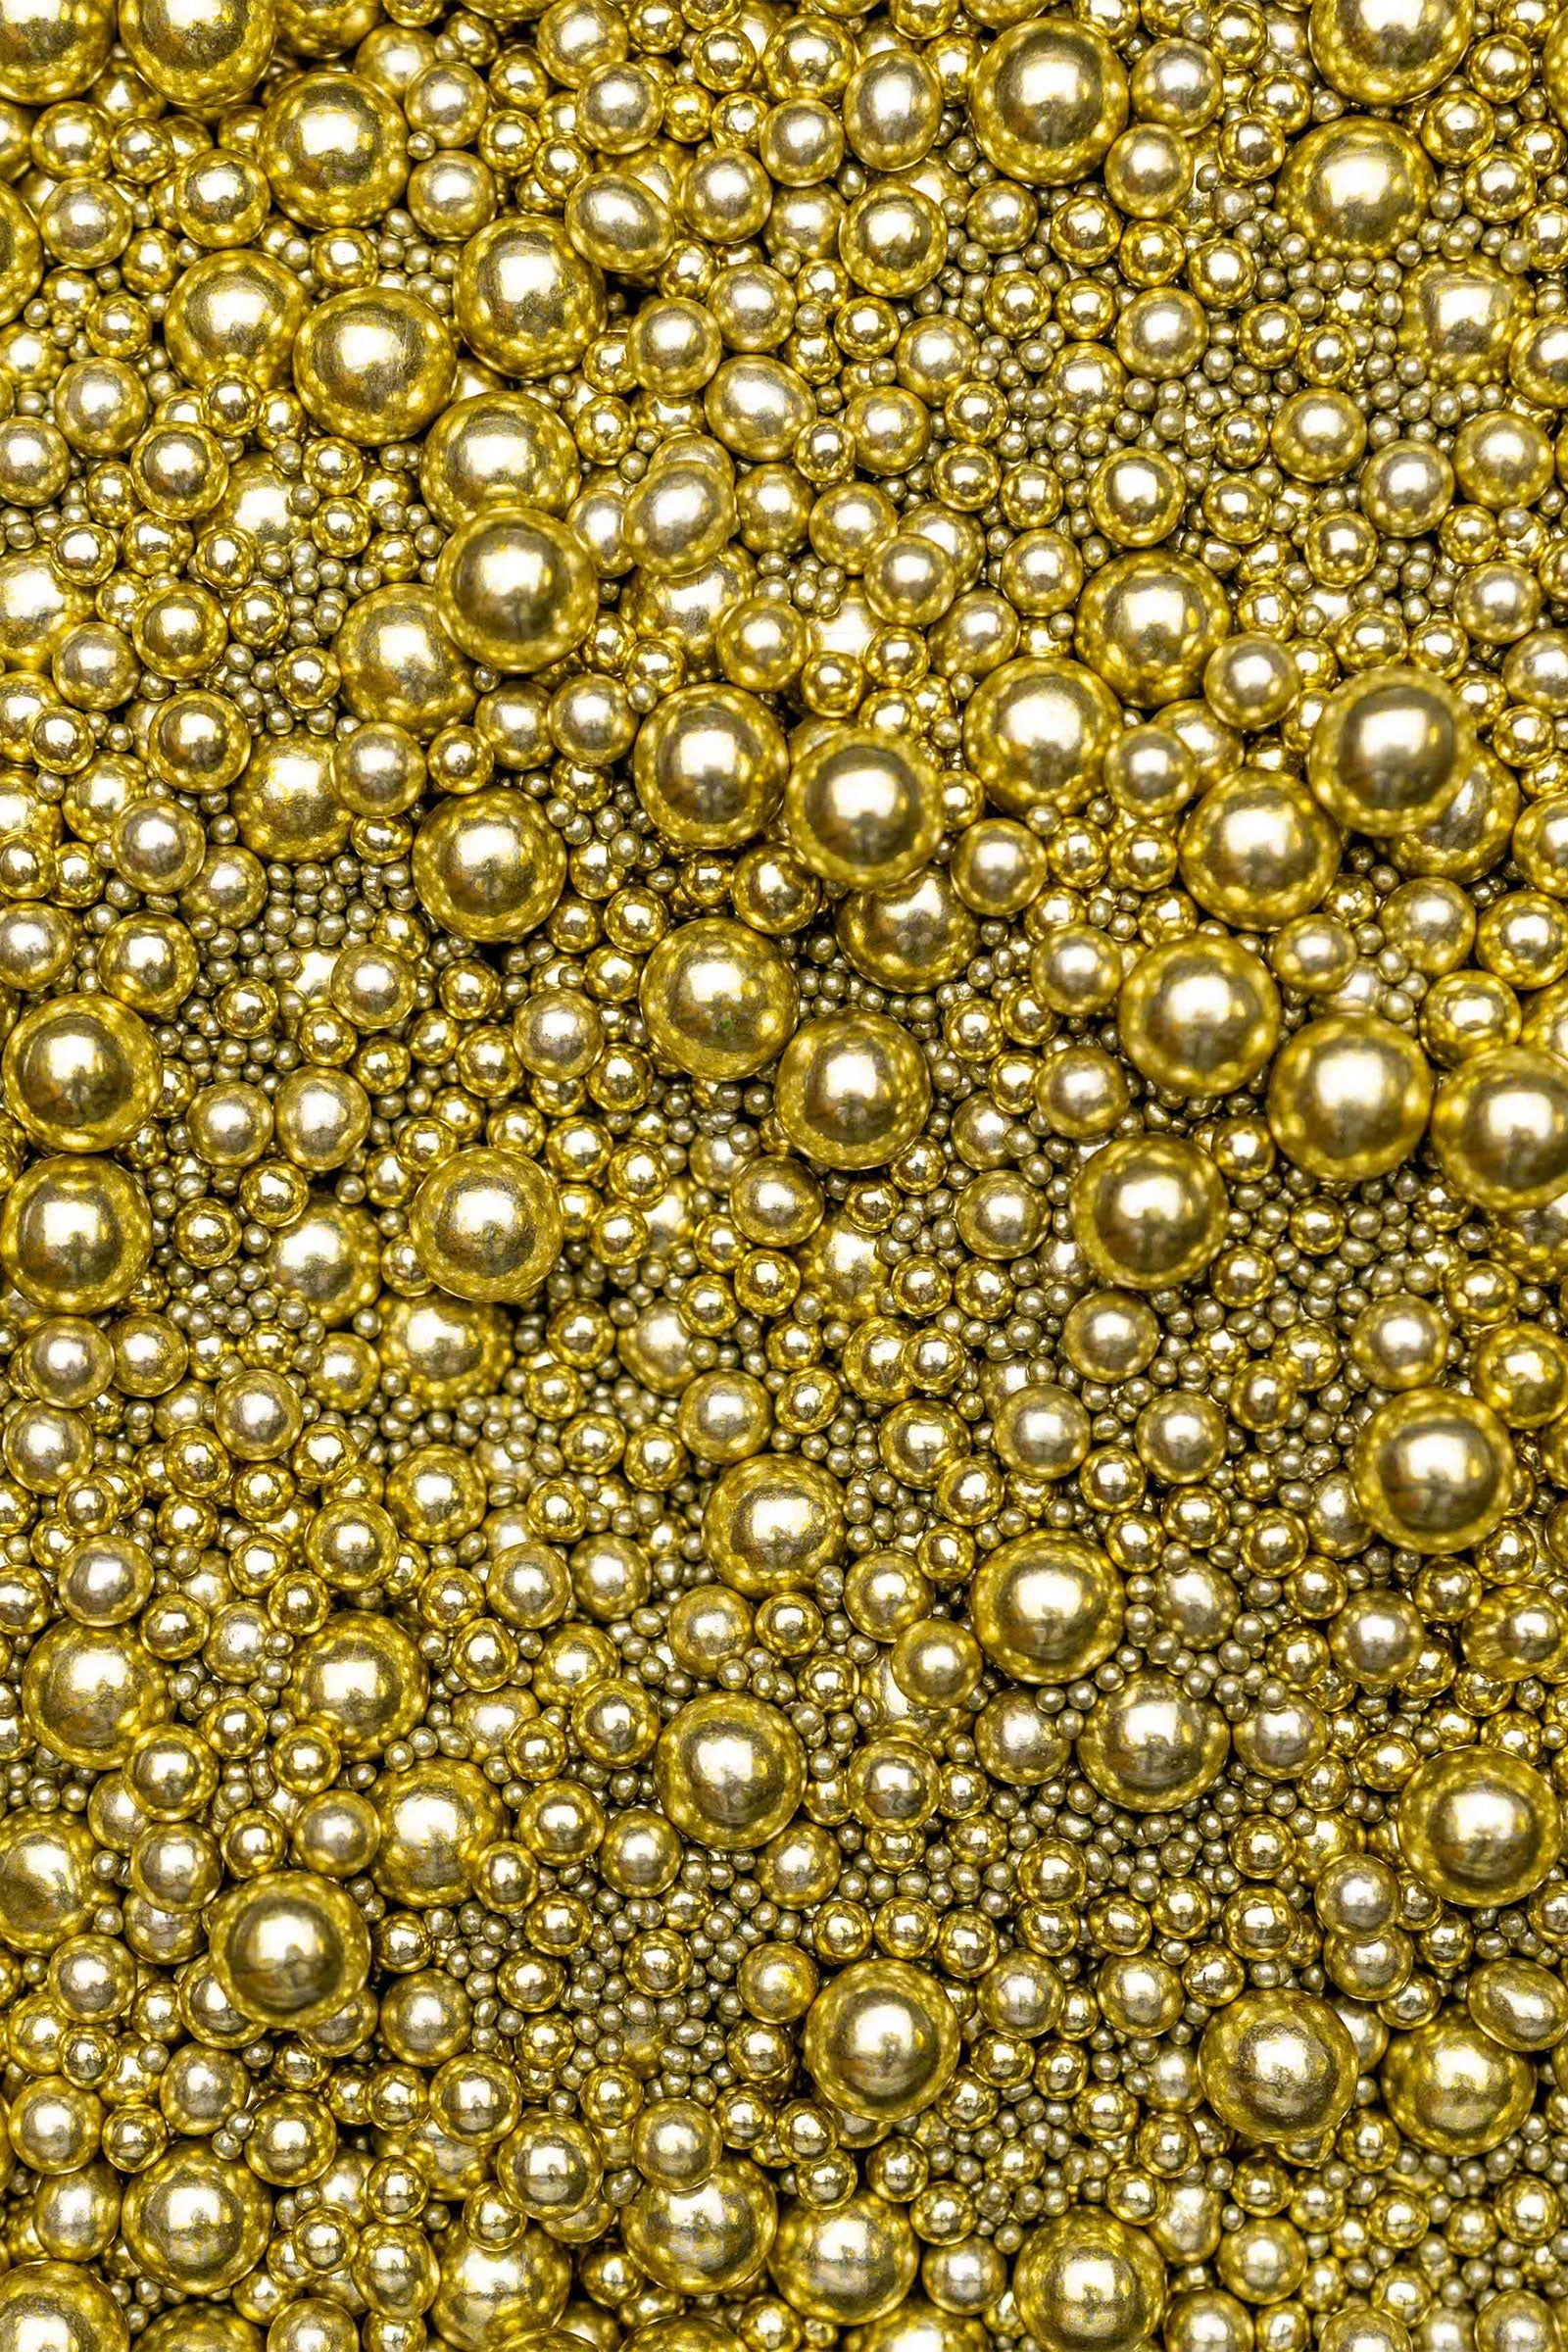 Sprinkle Blend - The Golden Gun